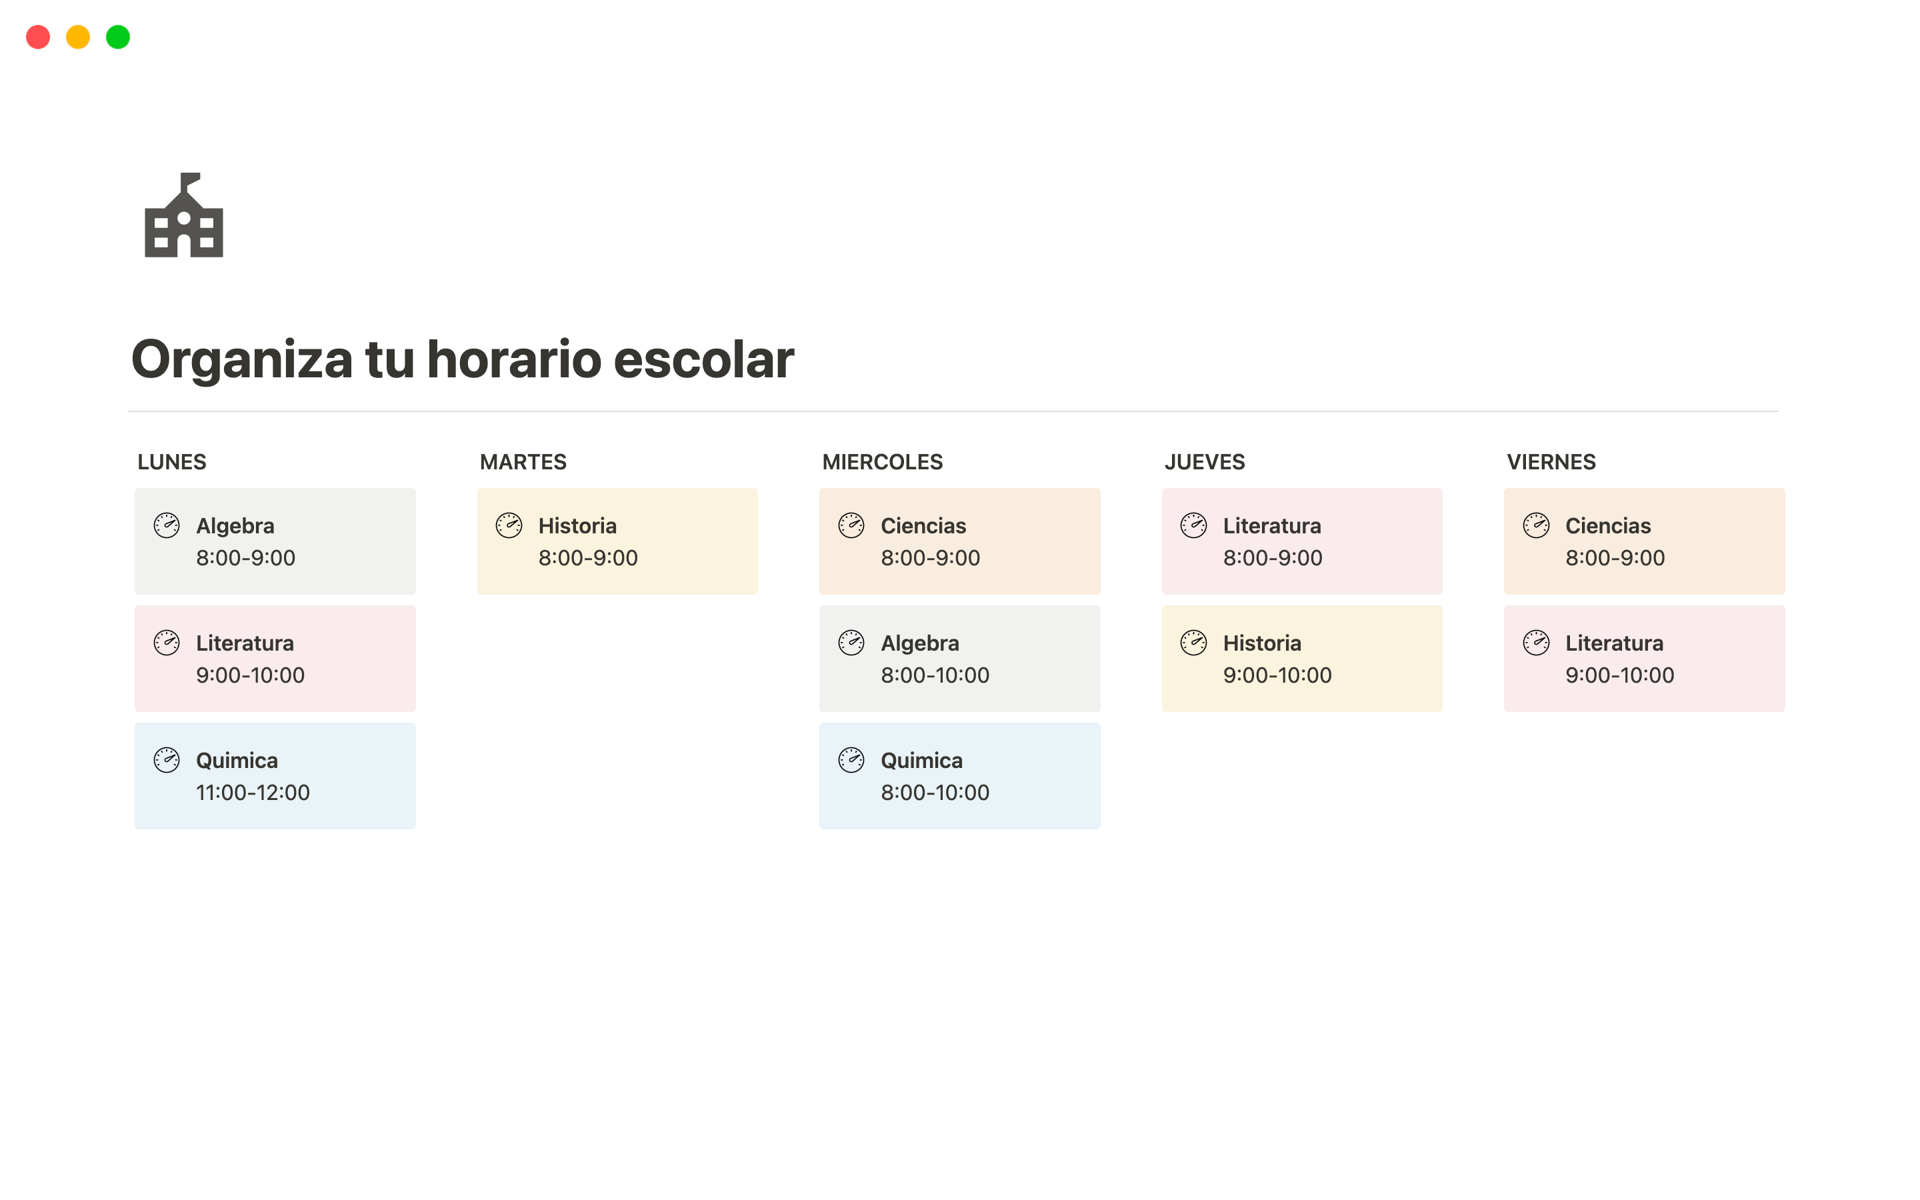 Eine Vorlagenvorschau für Horario Escolar